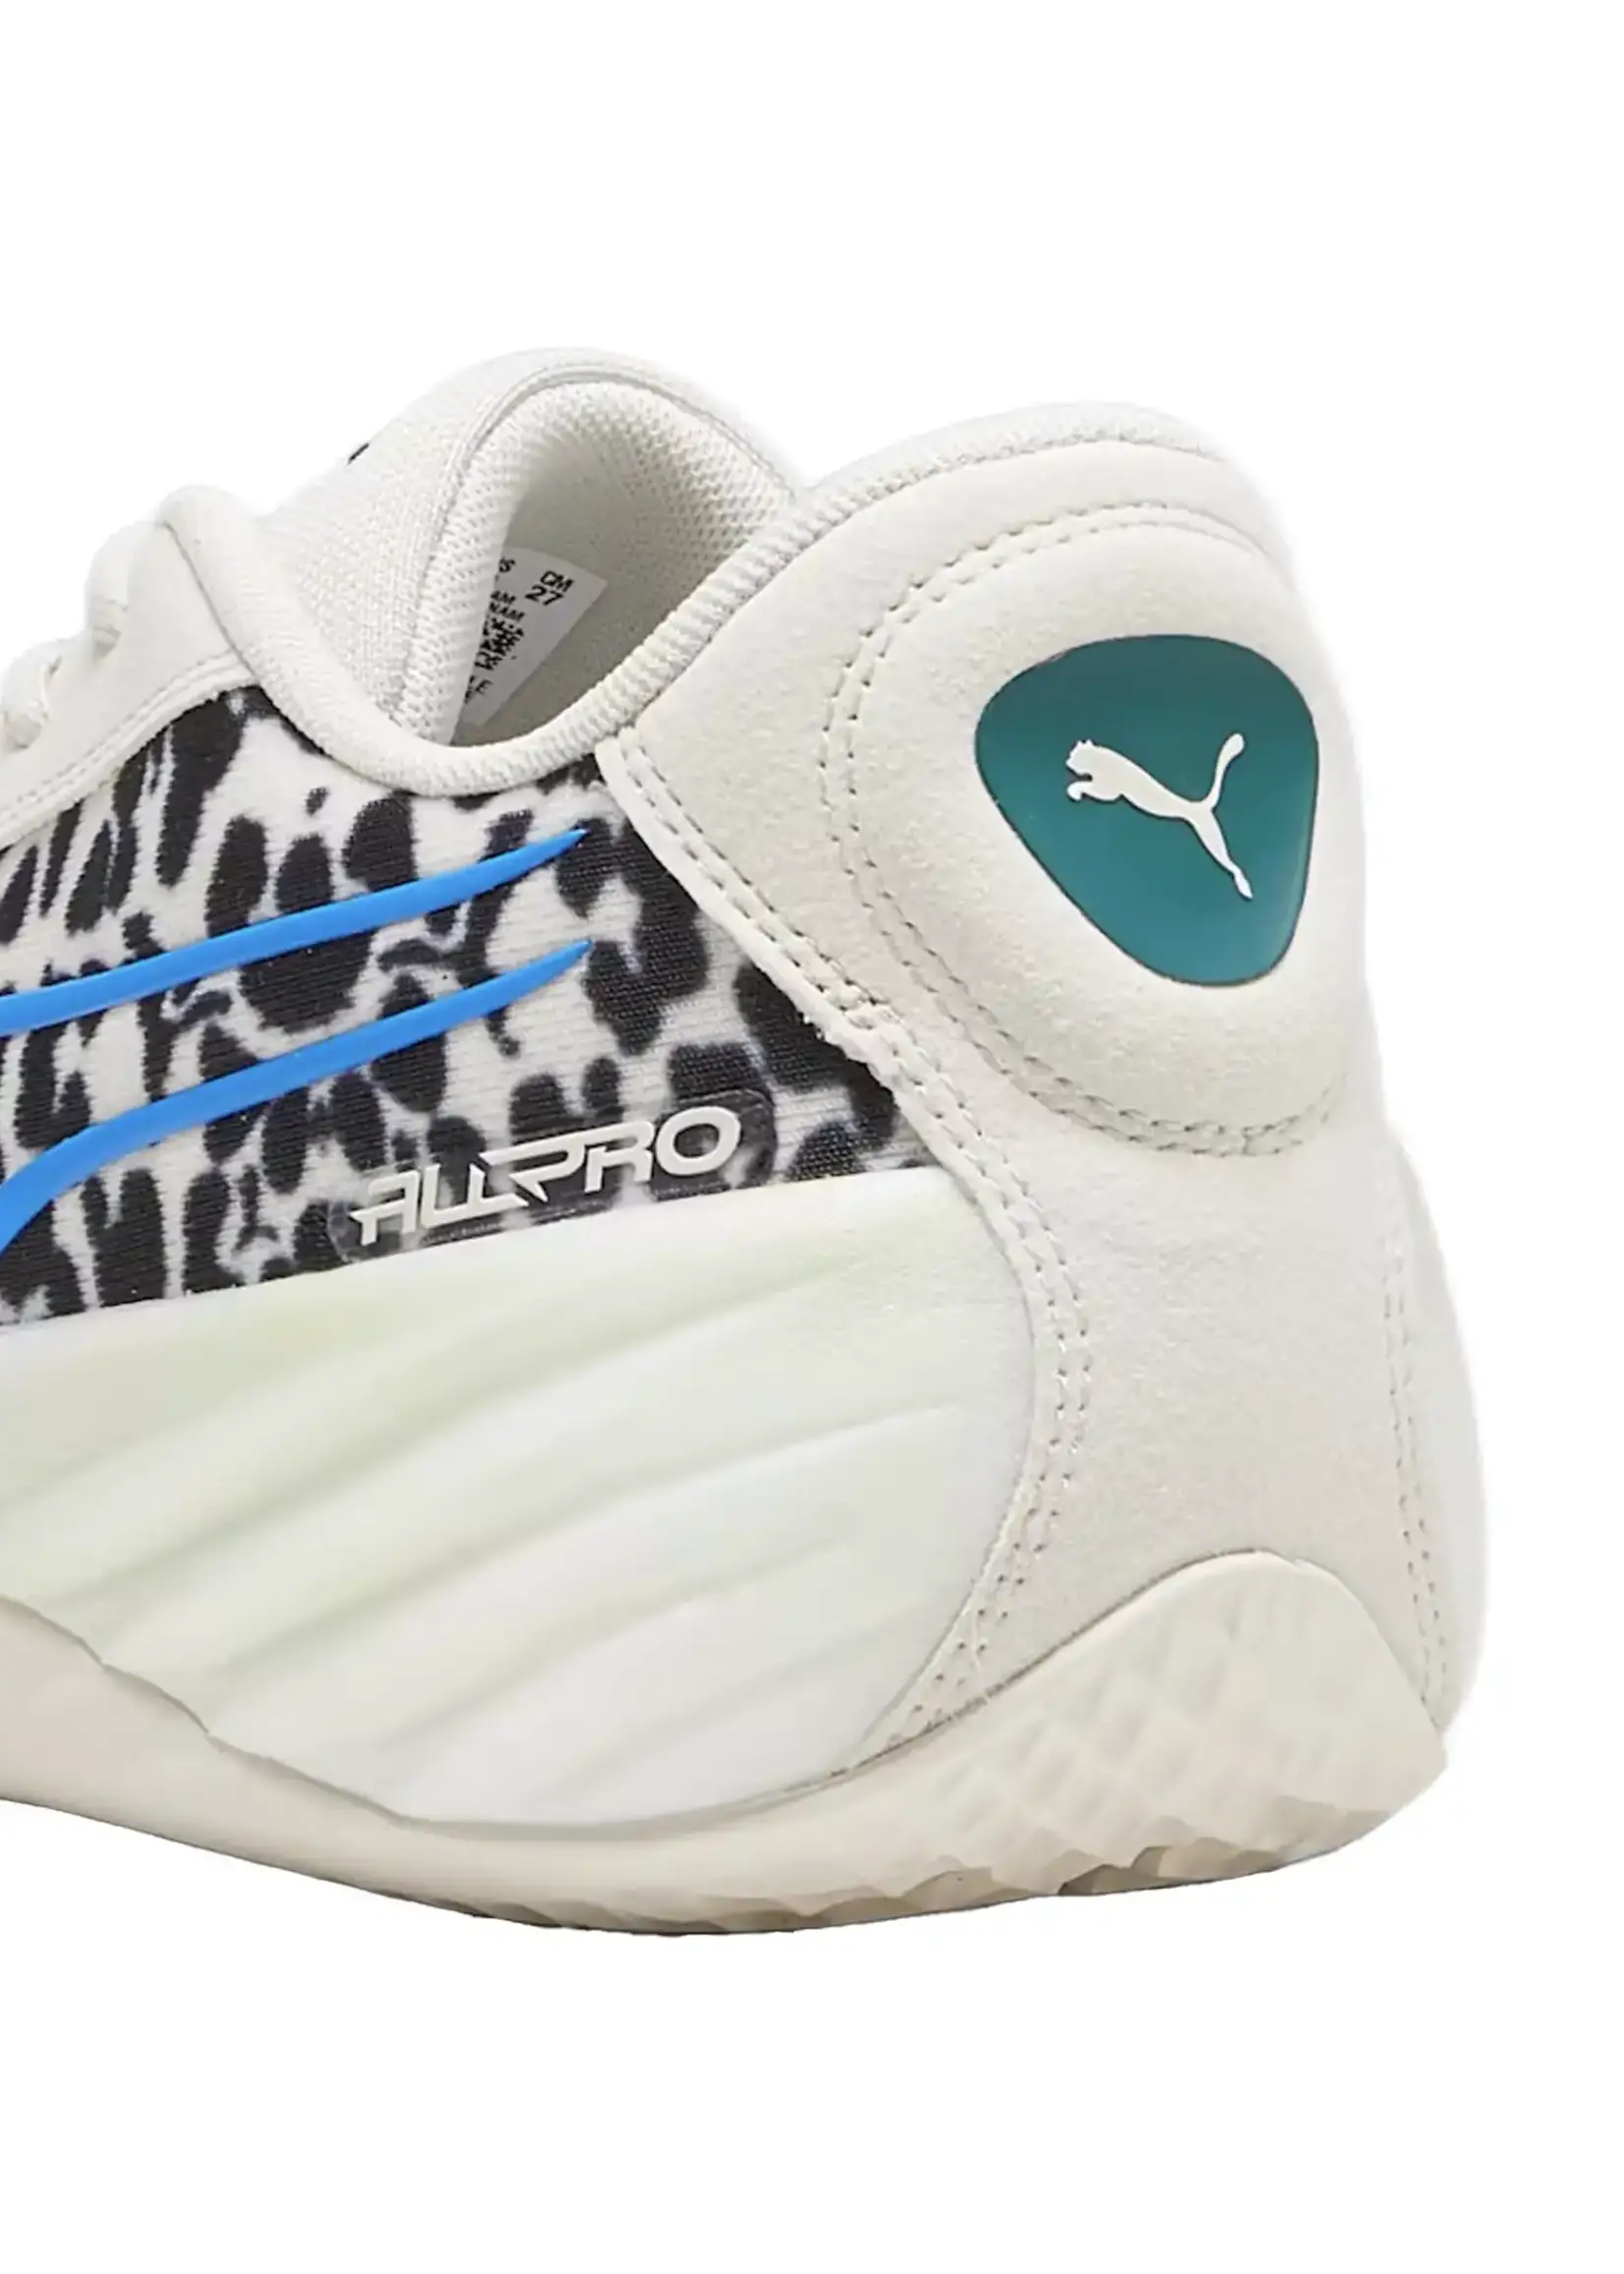 Puma All-Pro Nitro Clyde's Closet White Sneakers